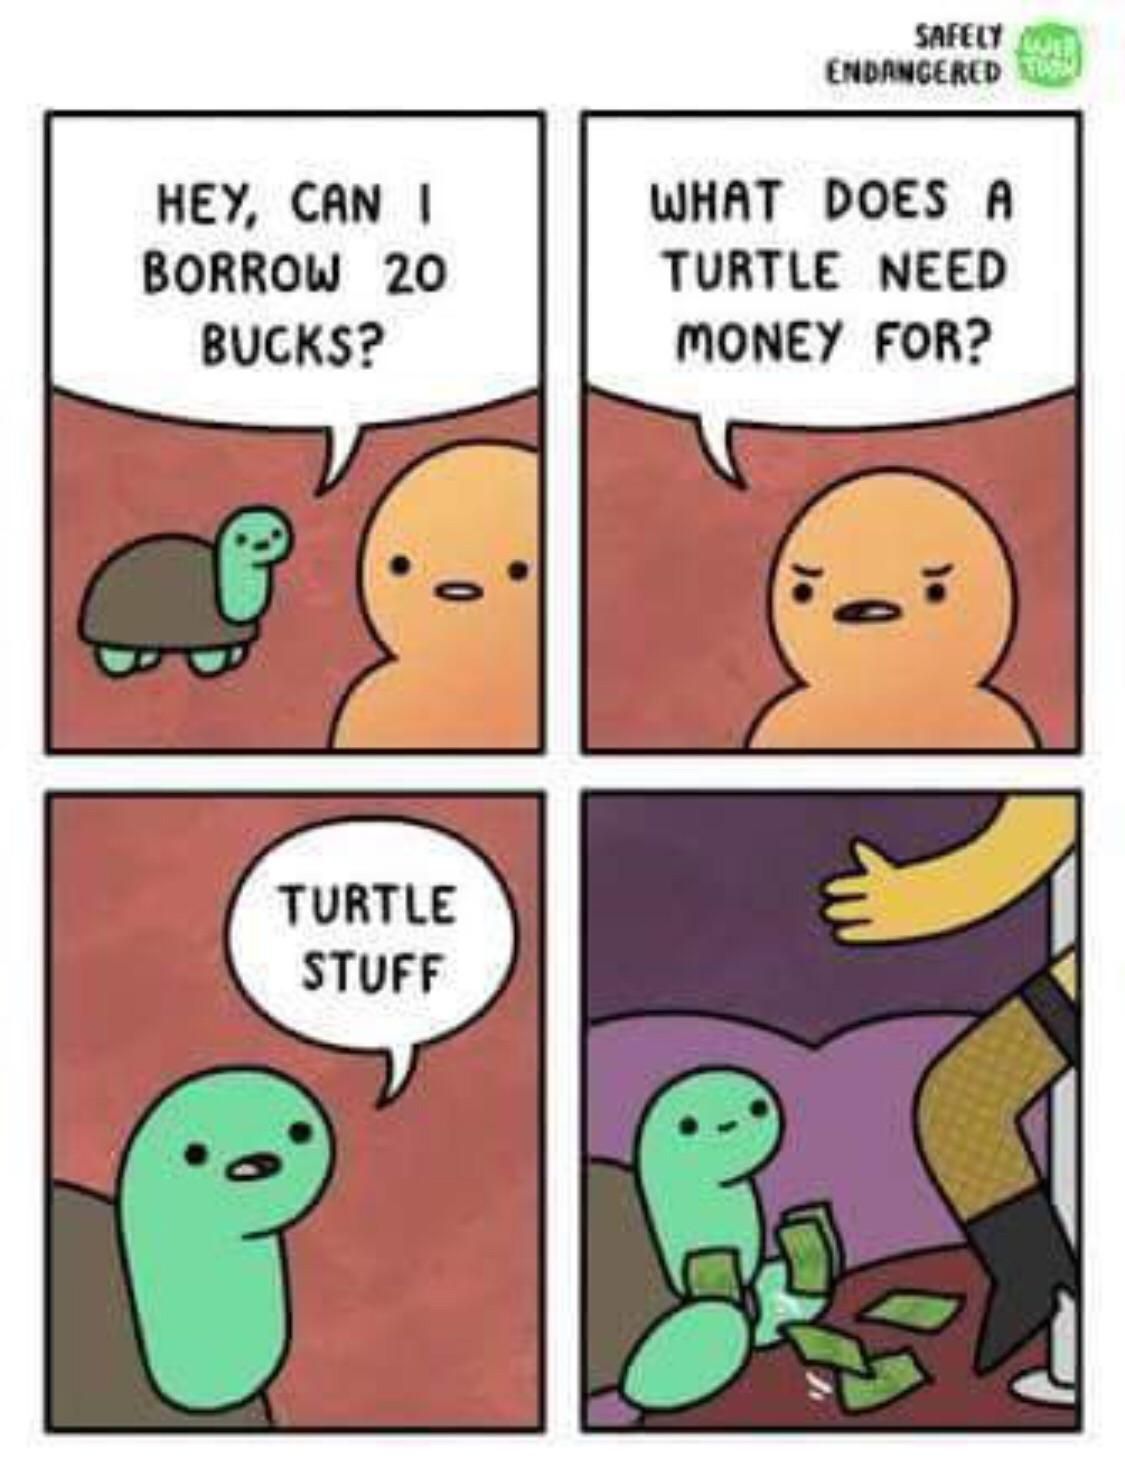 Turtle stuff...